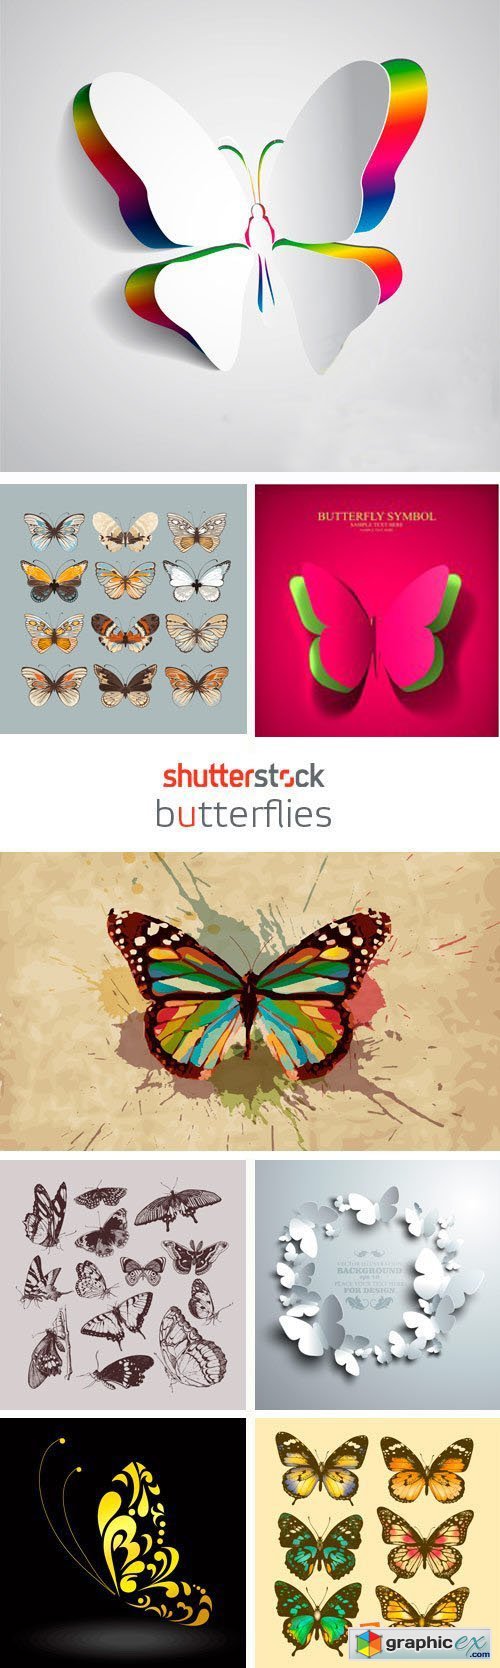 Amazing SS - Butterflies, 25xEPS